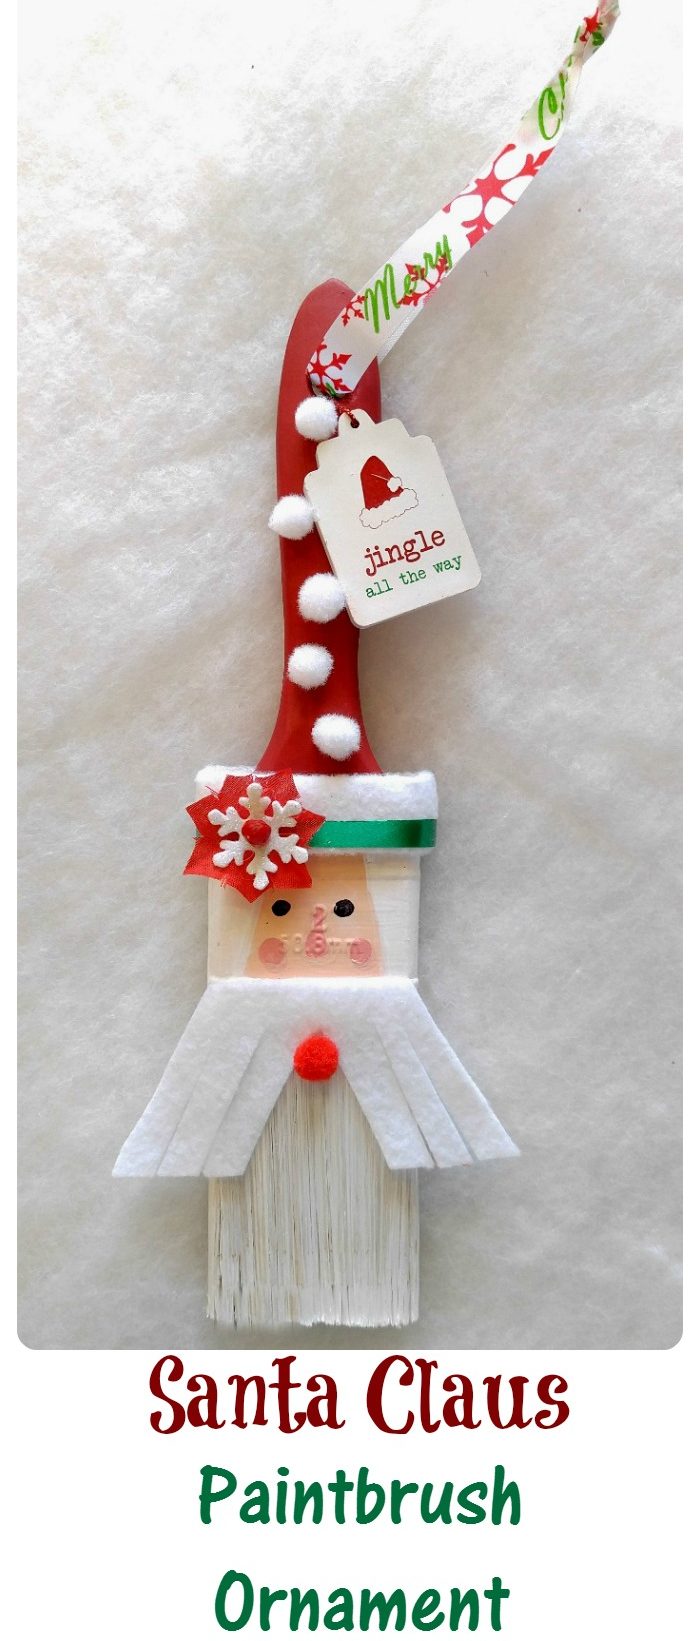 Santa Paint Brush Ornament - DIY Santa Claus Paintbrush Decoration